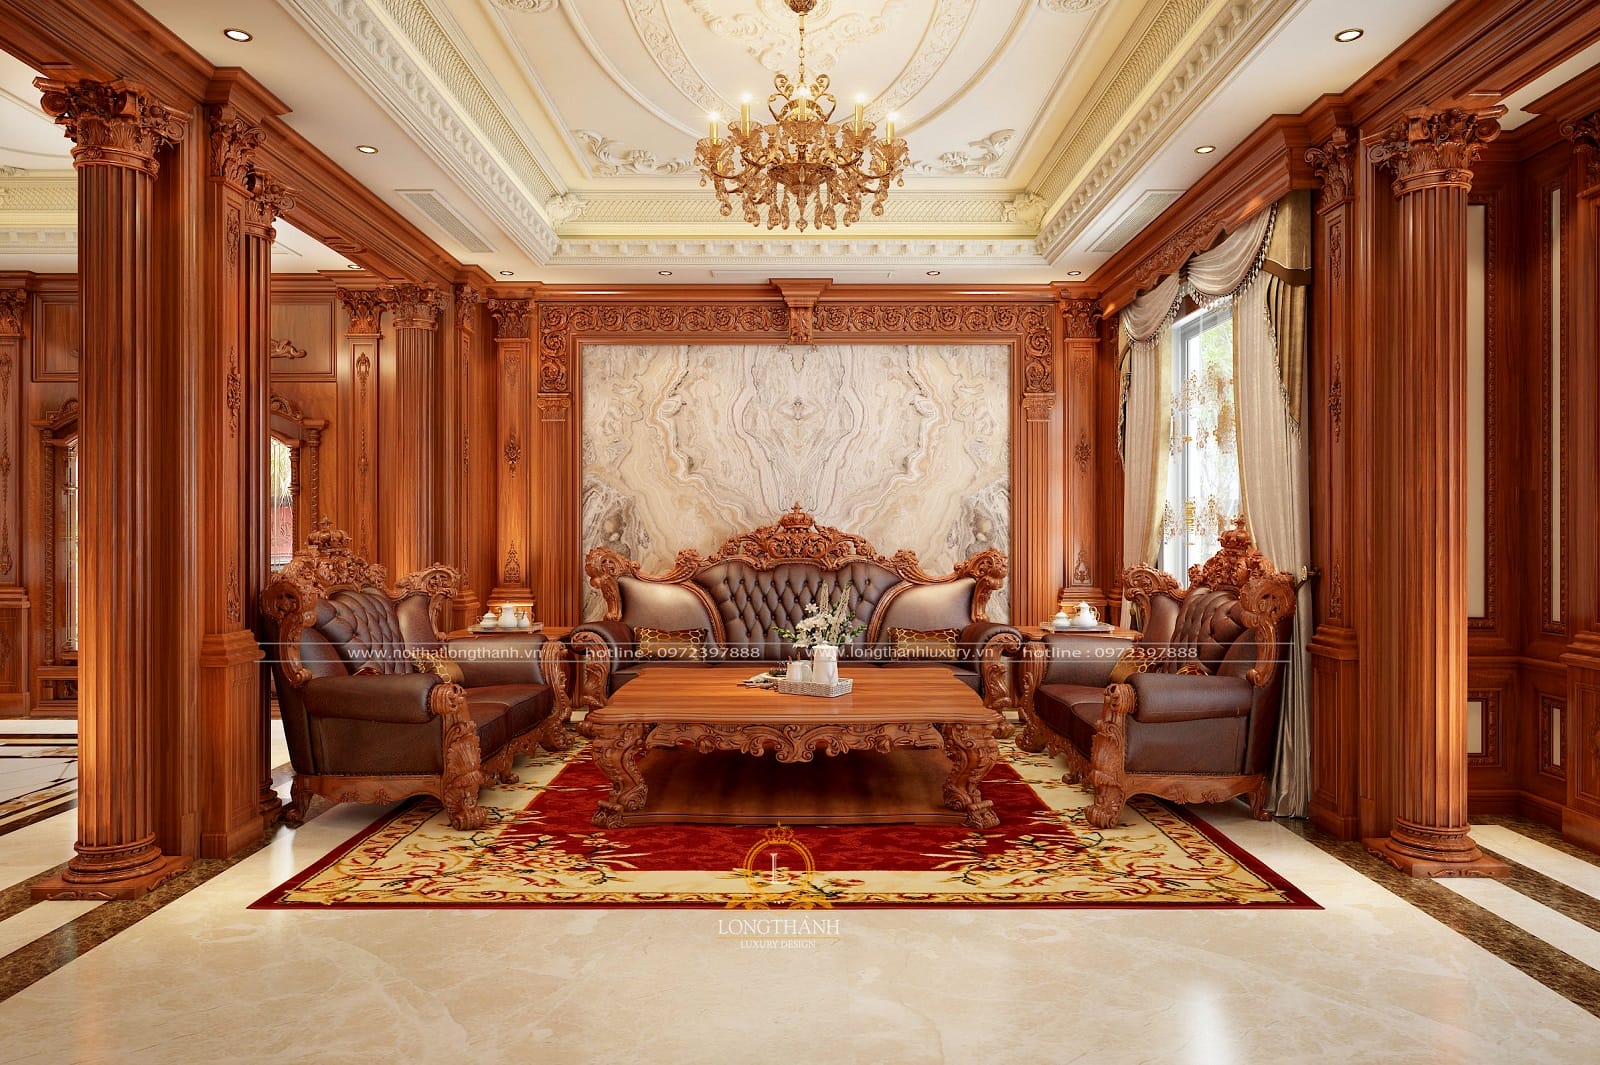 Sofa tân cổ điển đẹp, giá rẻ Nội thất Long Thành đã lắp đặt tại TPHCM